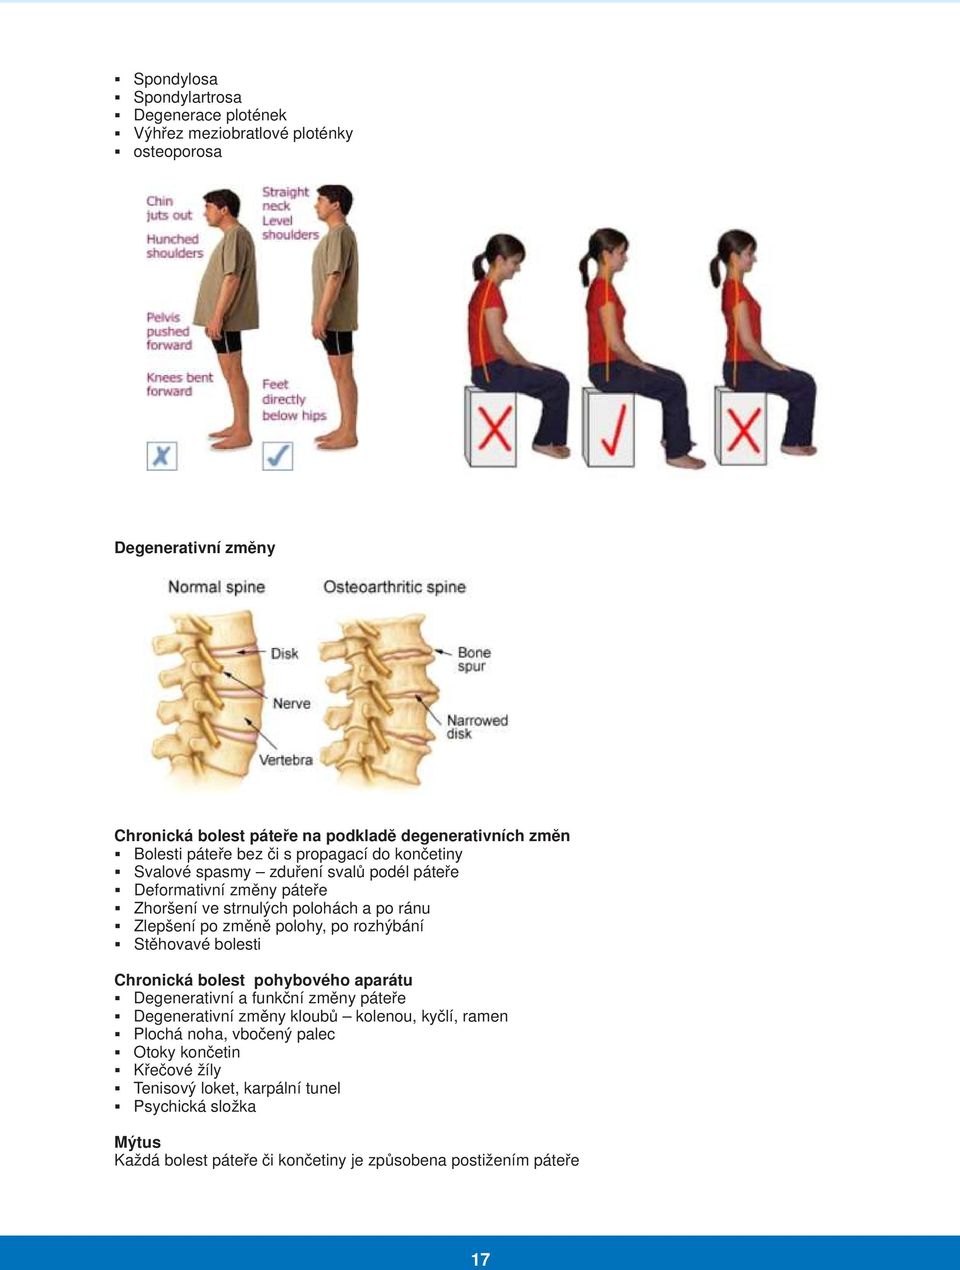 změně polohy, po rozhýbání Stěhovavé bolesti Chronická bolest pohybového aparátu Degenerativní a funkční změny páteře Degenerativní změny kloubů kolenou, kyčlí, ramen